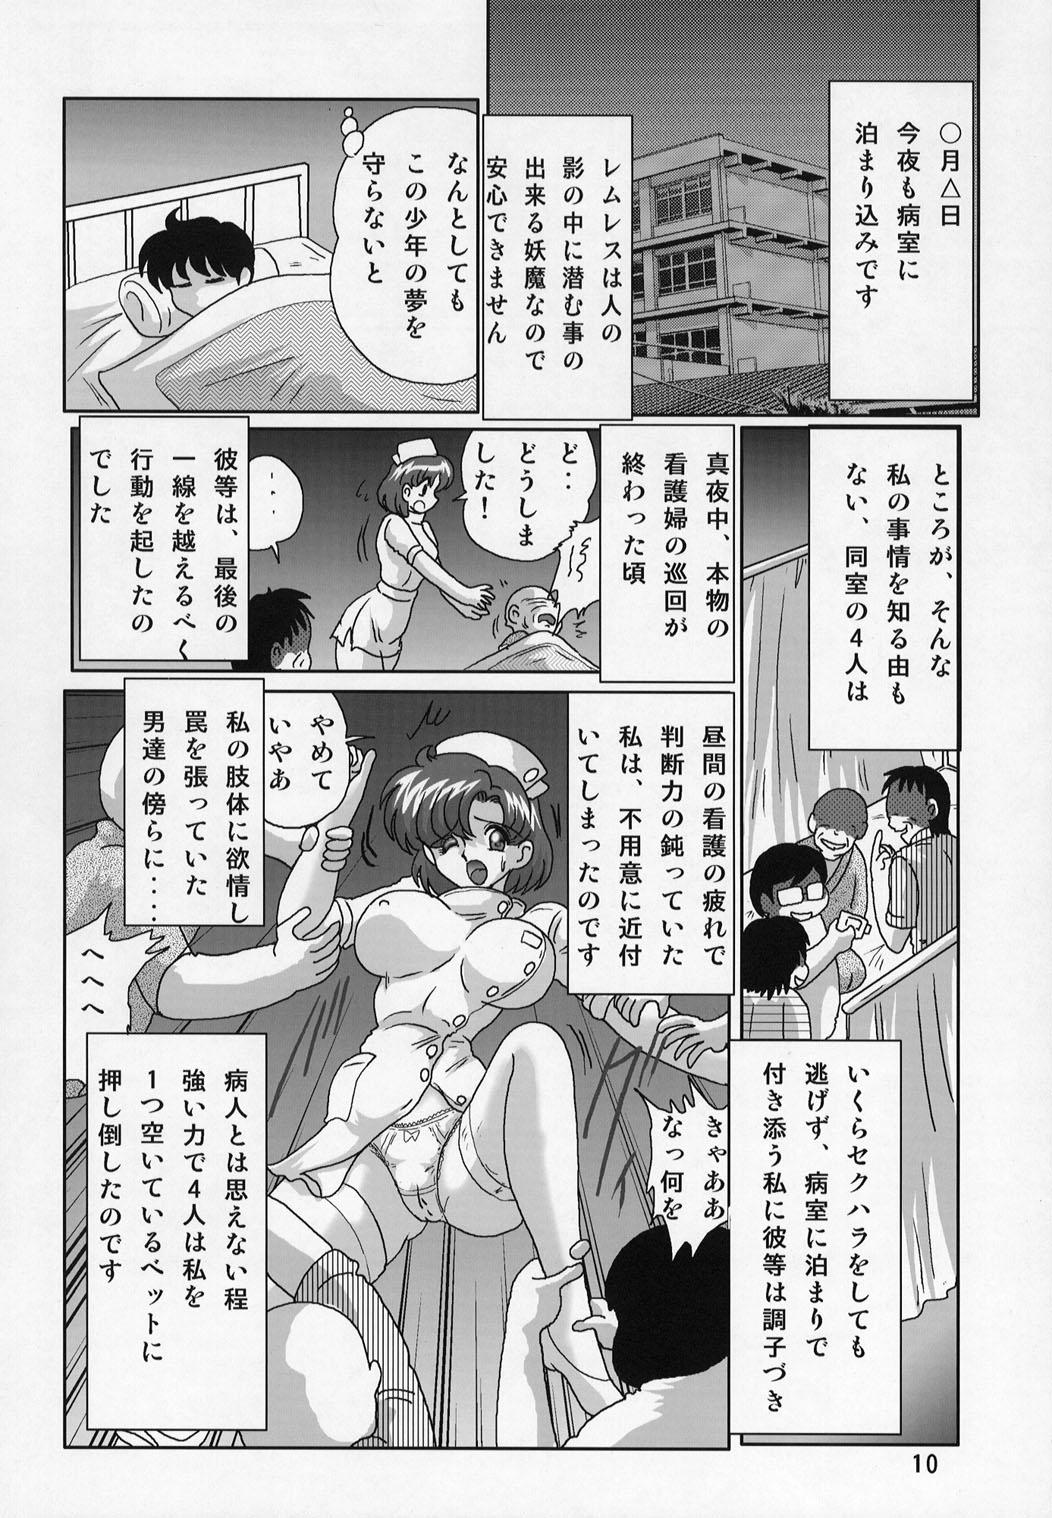 Humiliation Mizuno Ami Nasu Nikki - Sailor moon Peituda - Page 11